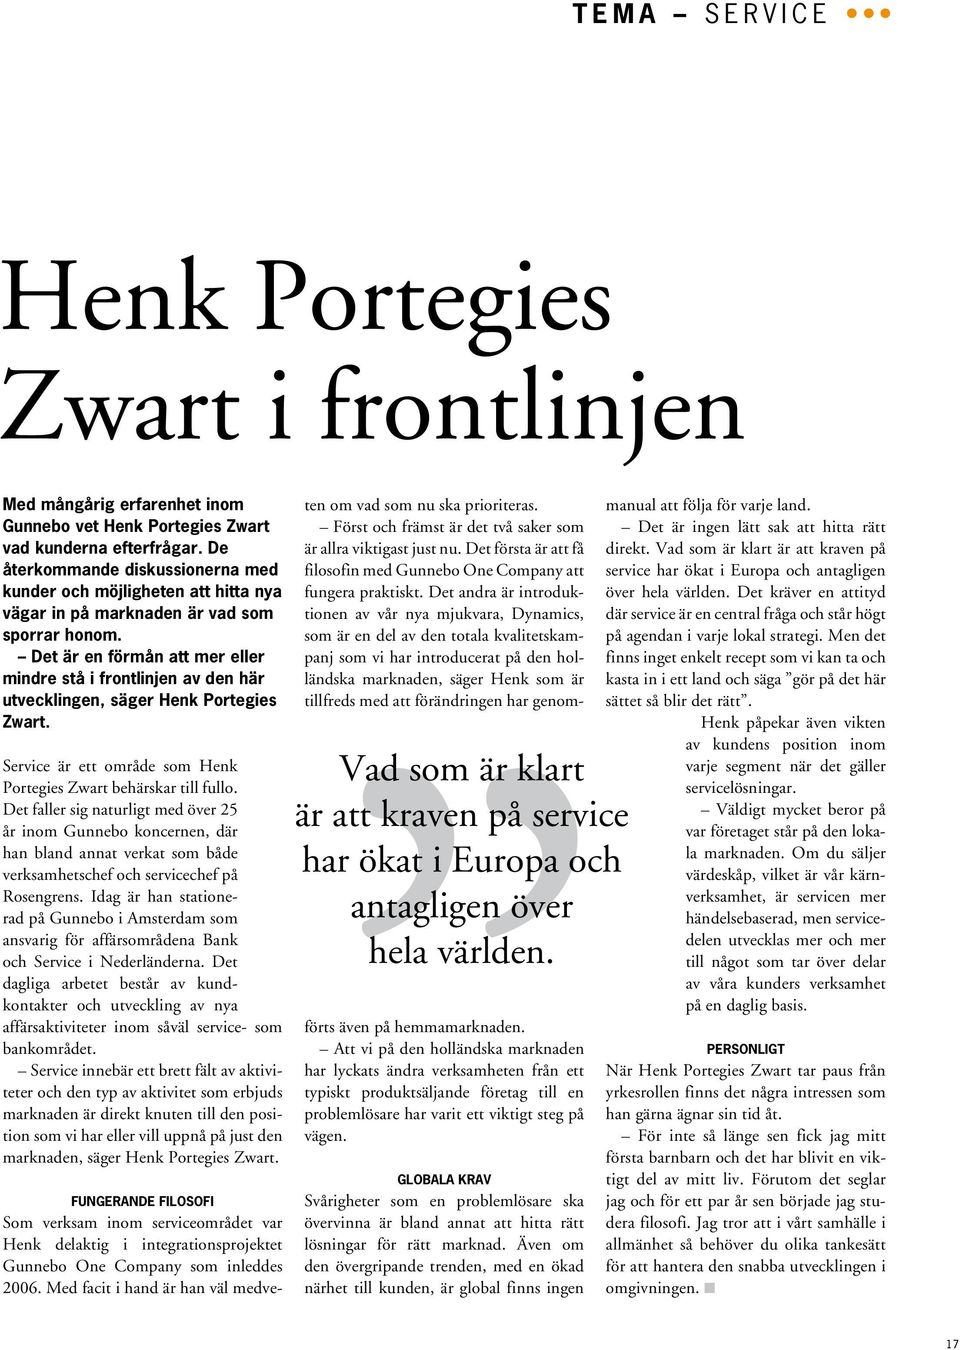 Det är en förmån att mer eller mindre stå i frontlinjen av den här utvecklingen, säger Henk Portegies Zwart. Service är ett område som Henk Portegies Zwart behärskar till fullo.